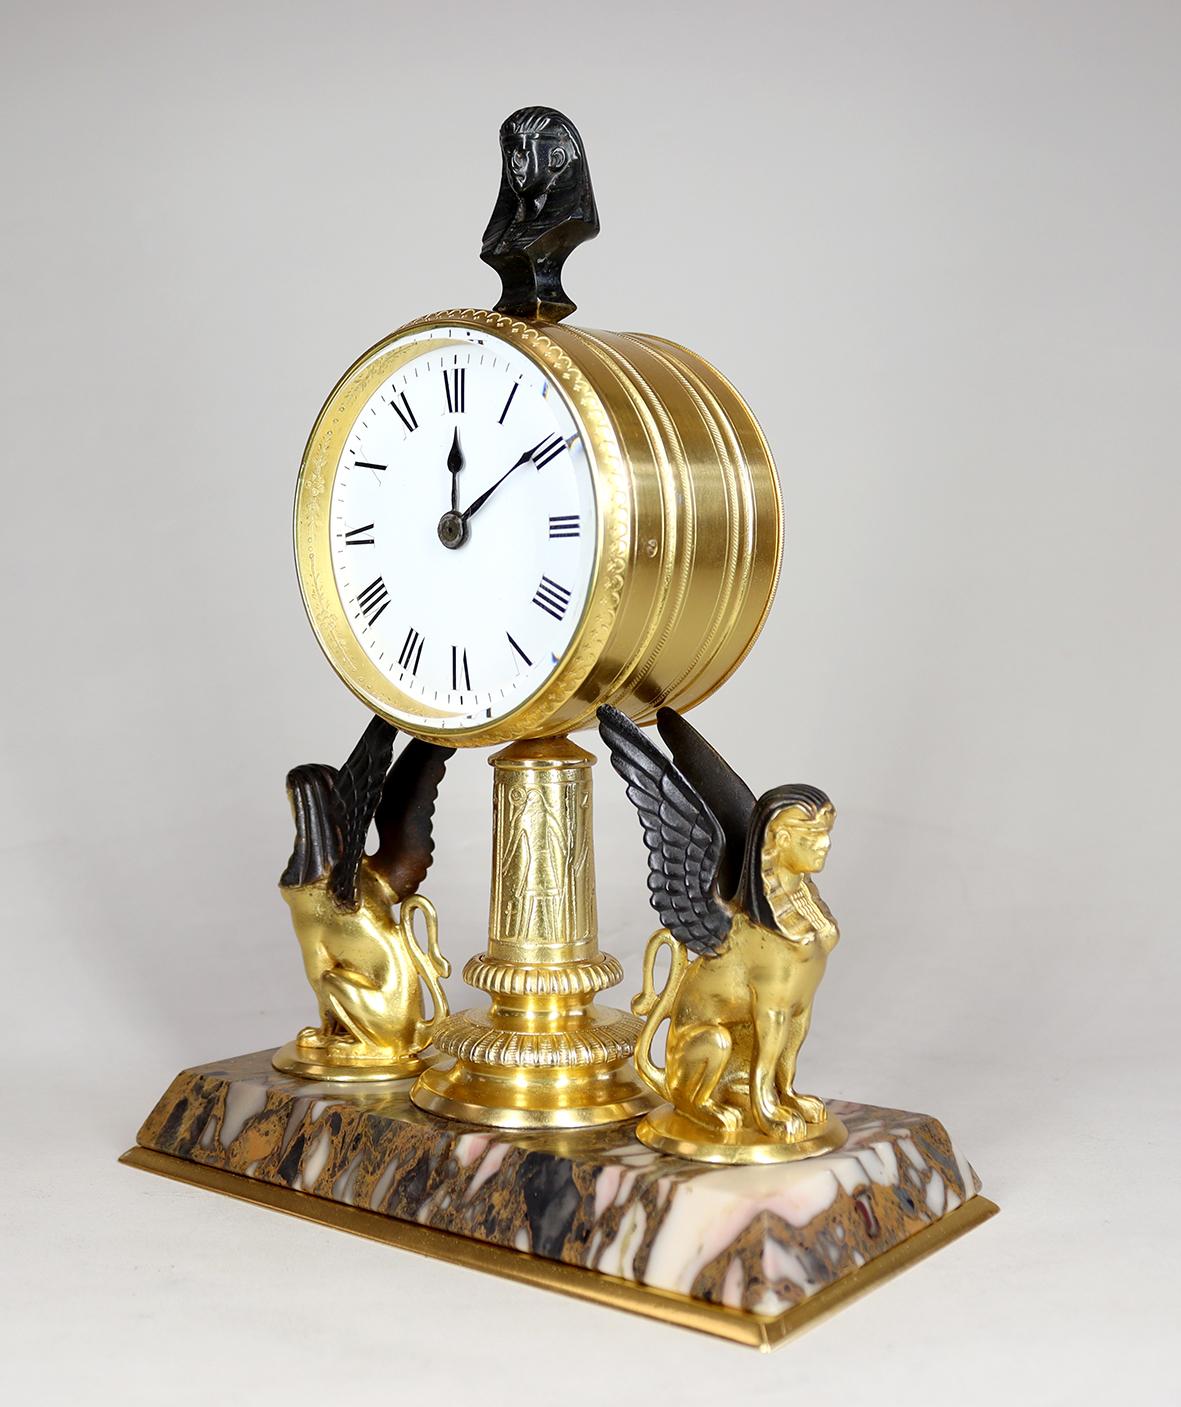 Eine ägyptische Revival-Uhr in einem vergoldeten und bronzenen Gehäuse. Das viersäulige Acht-Tage-Werk mit Zylinderhemmung ist in einem Trommelgehäuse untergebracht und hinter einem strahlend weißen Emailzifferblatt mit römischen Ziffern und